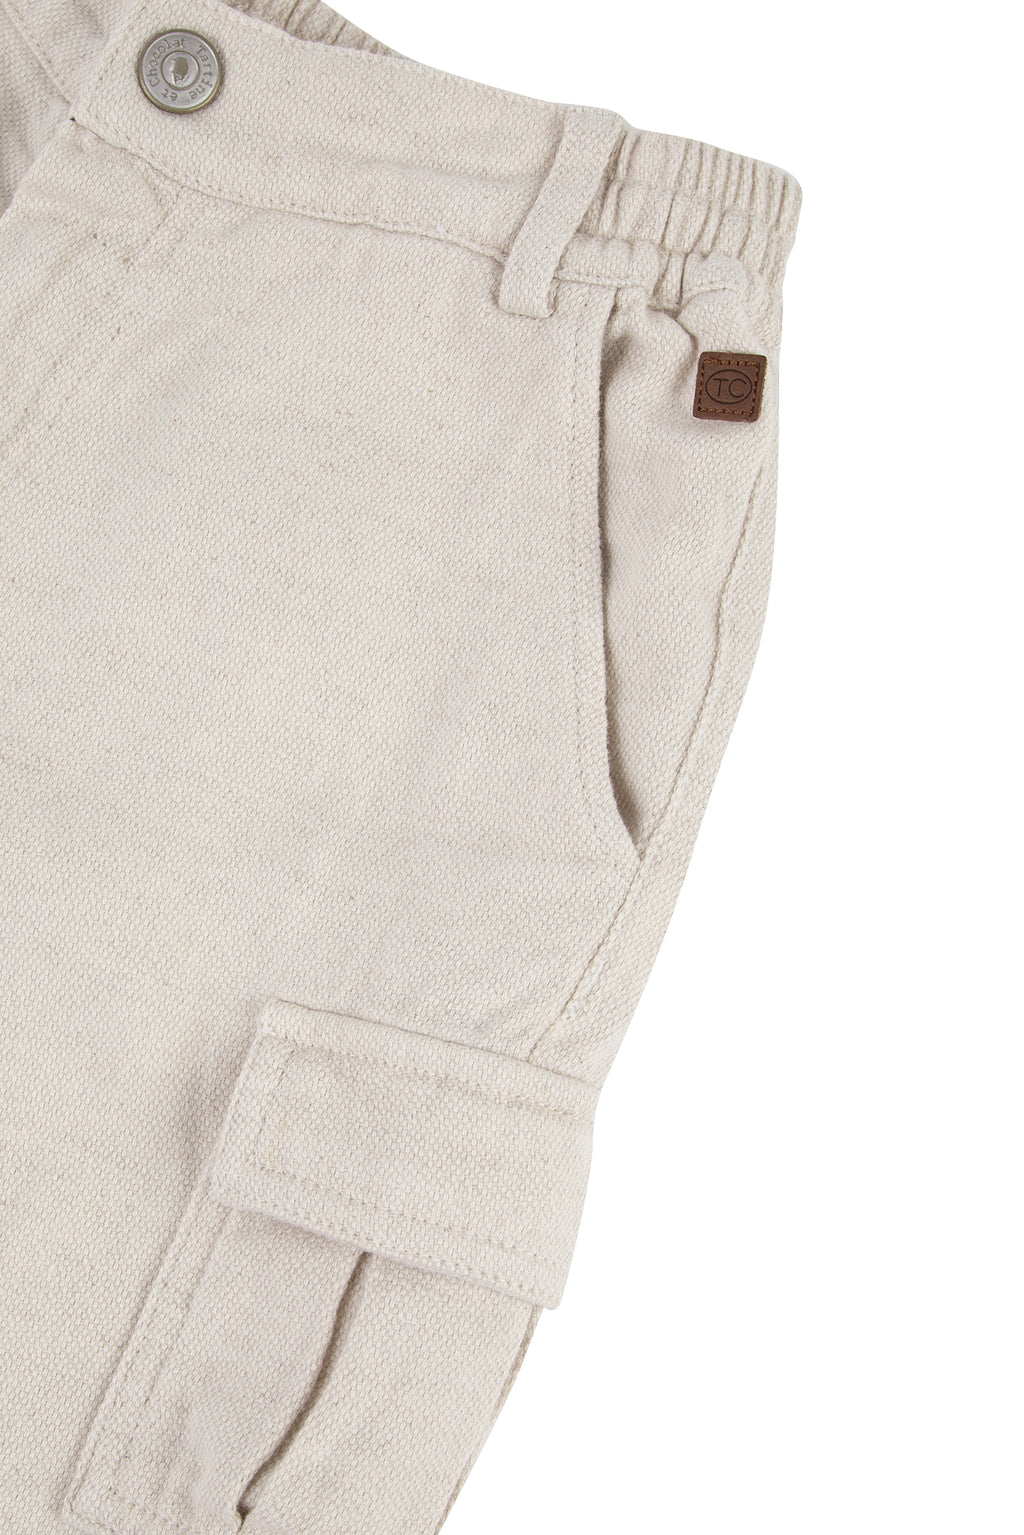 Trousers - Beige cargo Linen